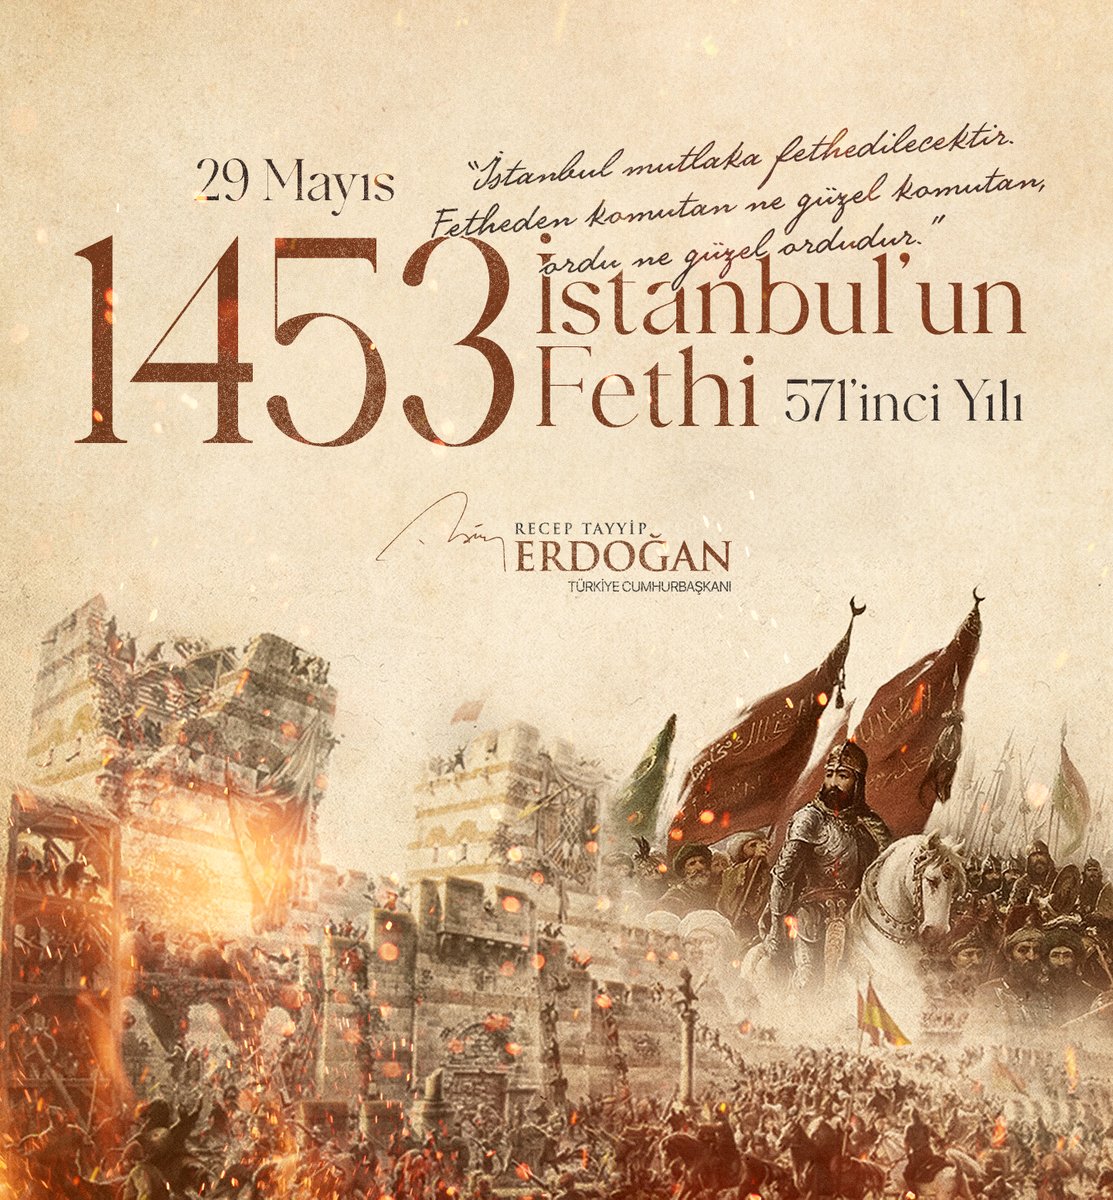 Dünya tarihinin ve tarihimizin muhteşem zaferlerinden biri olan İstanbul’un Fethi’nin 571’inci yıl dönümünü tebrik ediyorum. Eşsiz güzellikteki dünya şehrini bizlere miras bırakan Fatih Sultan Mehmet ile aziz şehitlerimizi rahmetle, hürmetle ve minnetle yâd ediyorum.